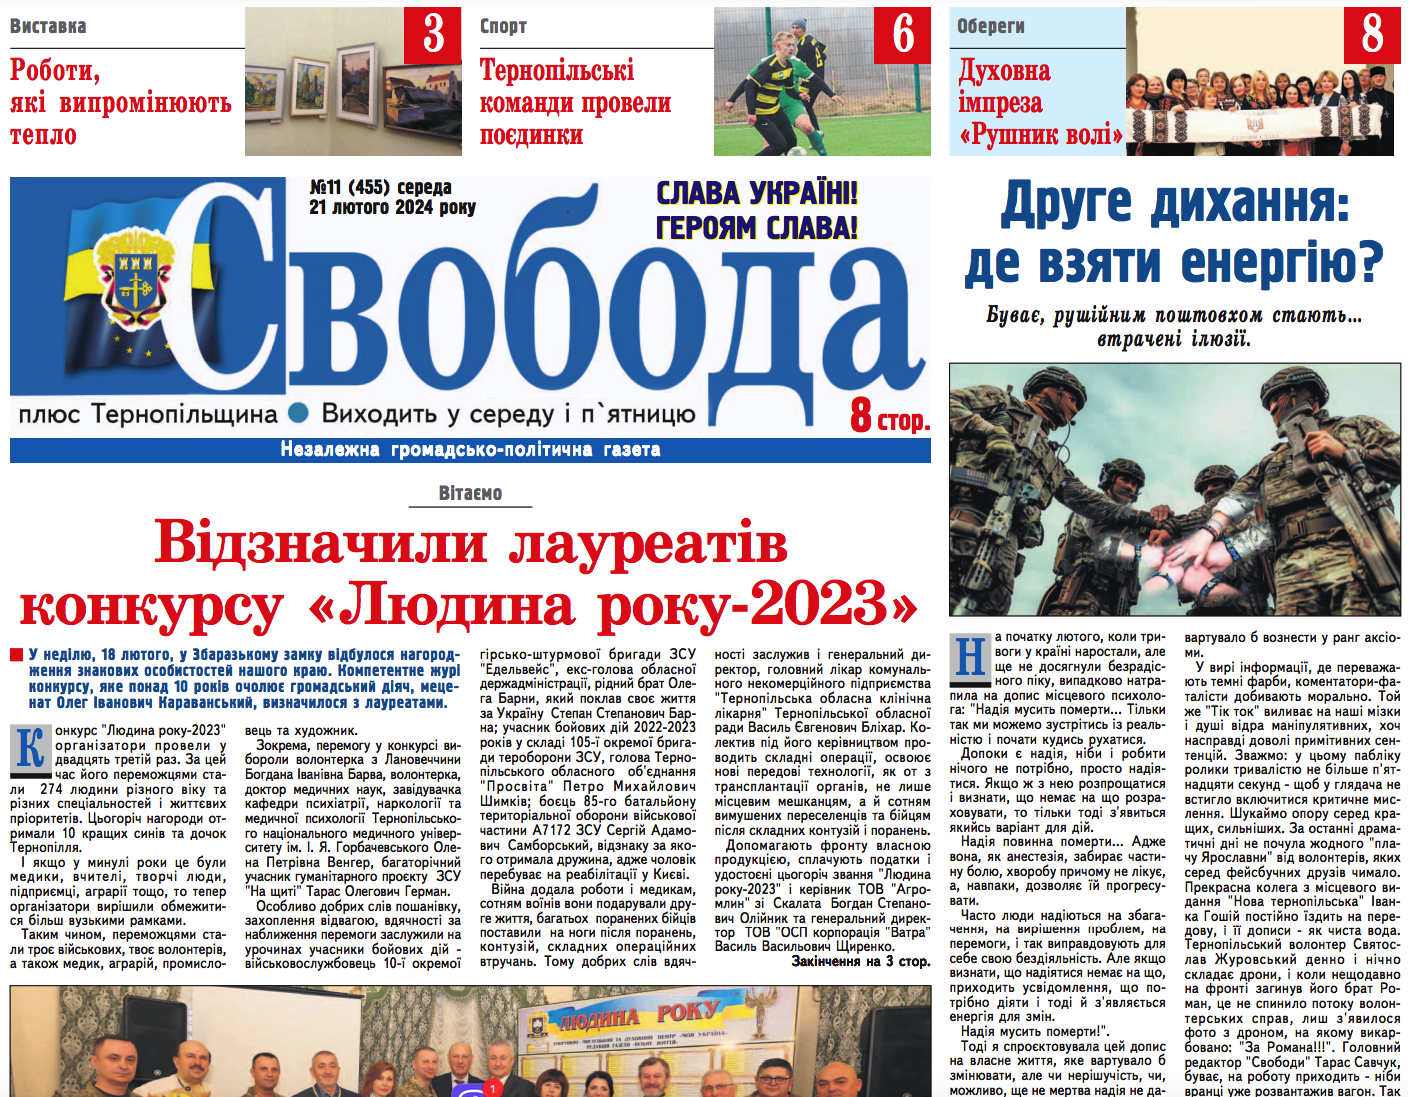 Лауреати конкурсу «Людина року-2023» на Тернопільщині, – читайте в газеті «Свобода»